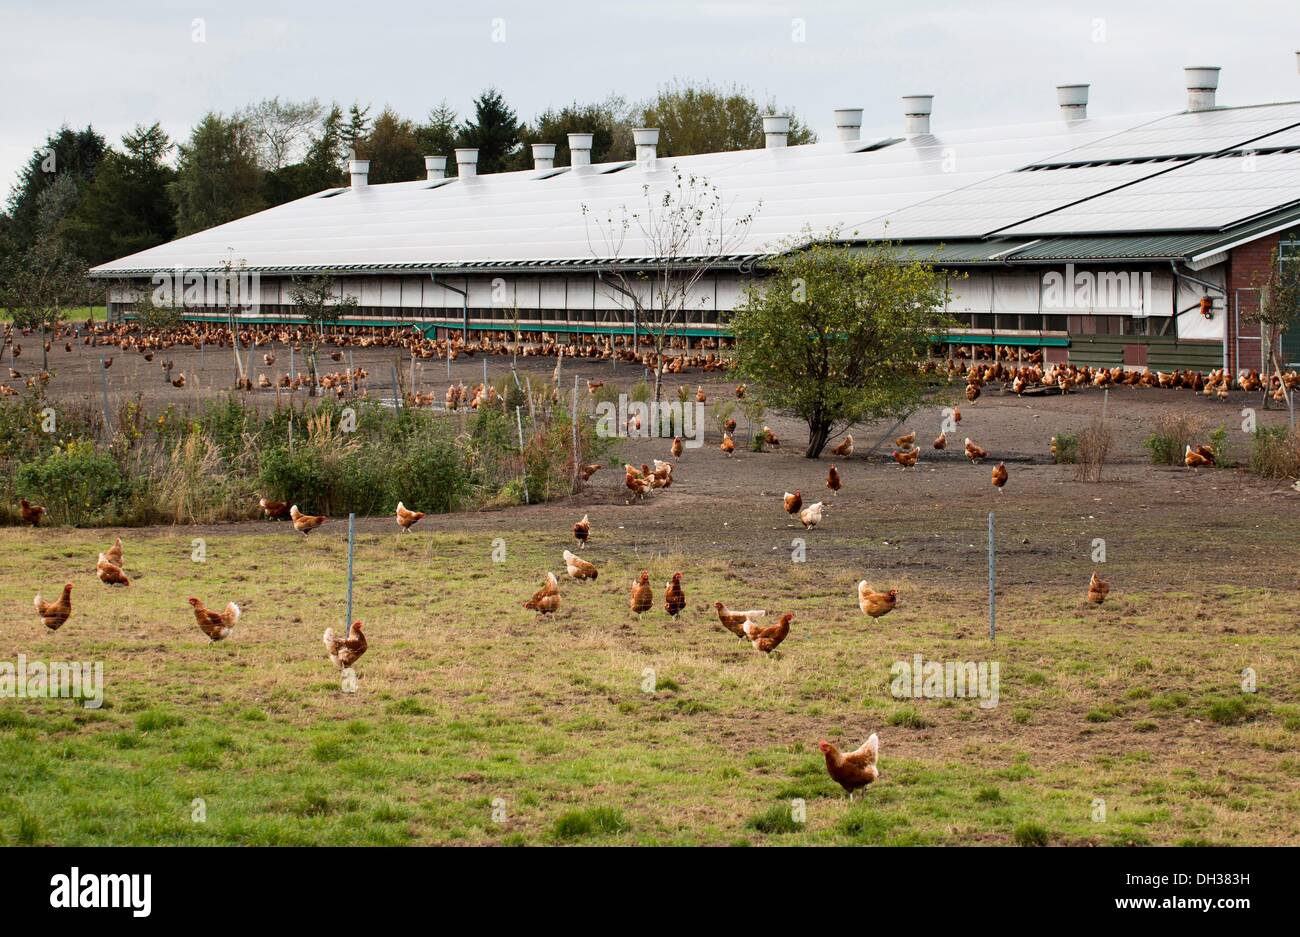 Freilandhaltung Hühnerfarm Stockfoto